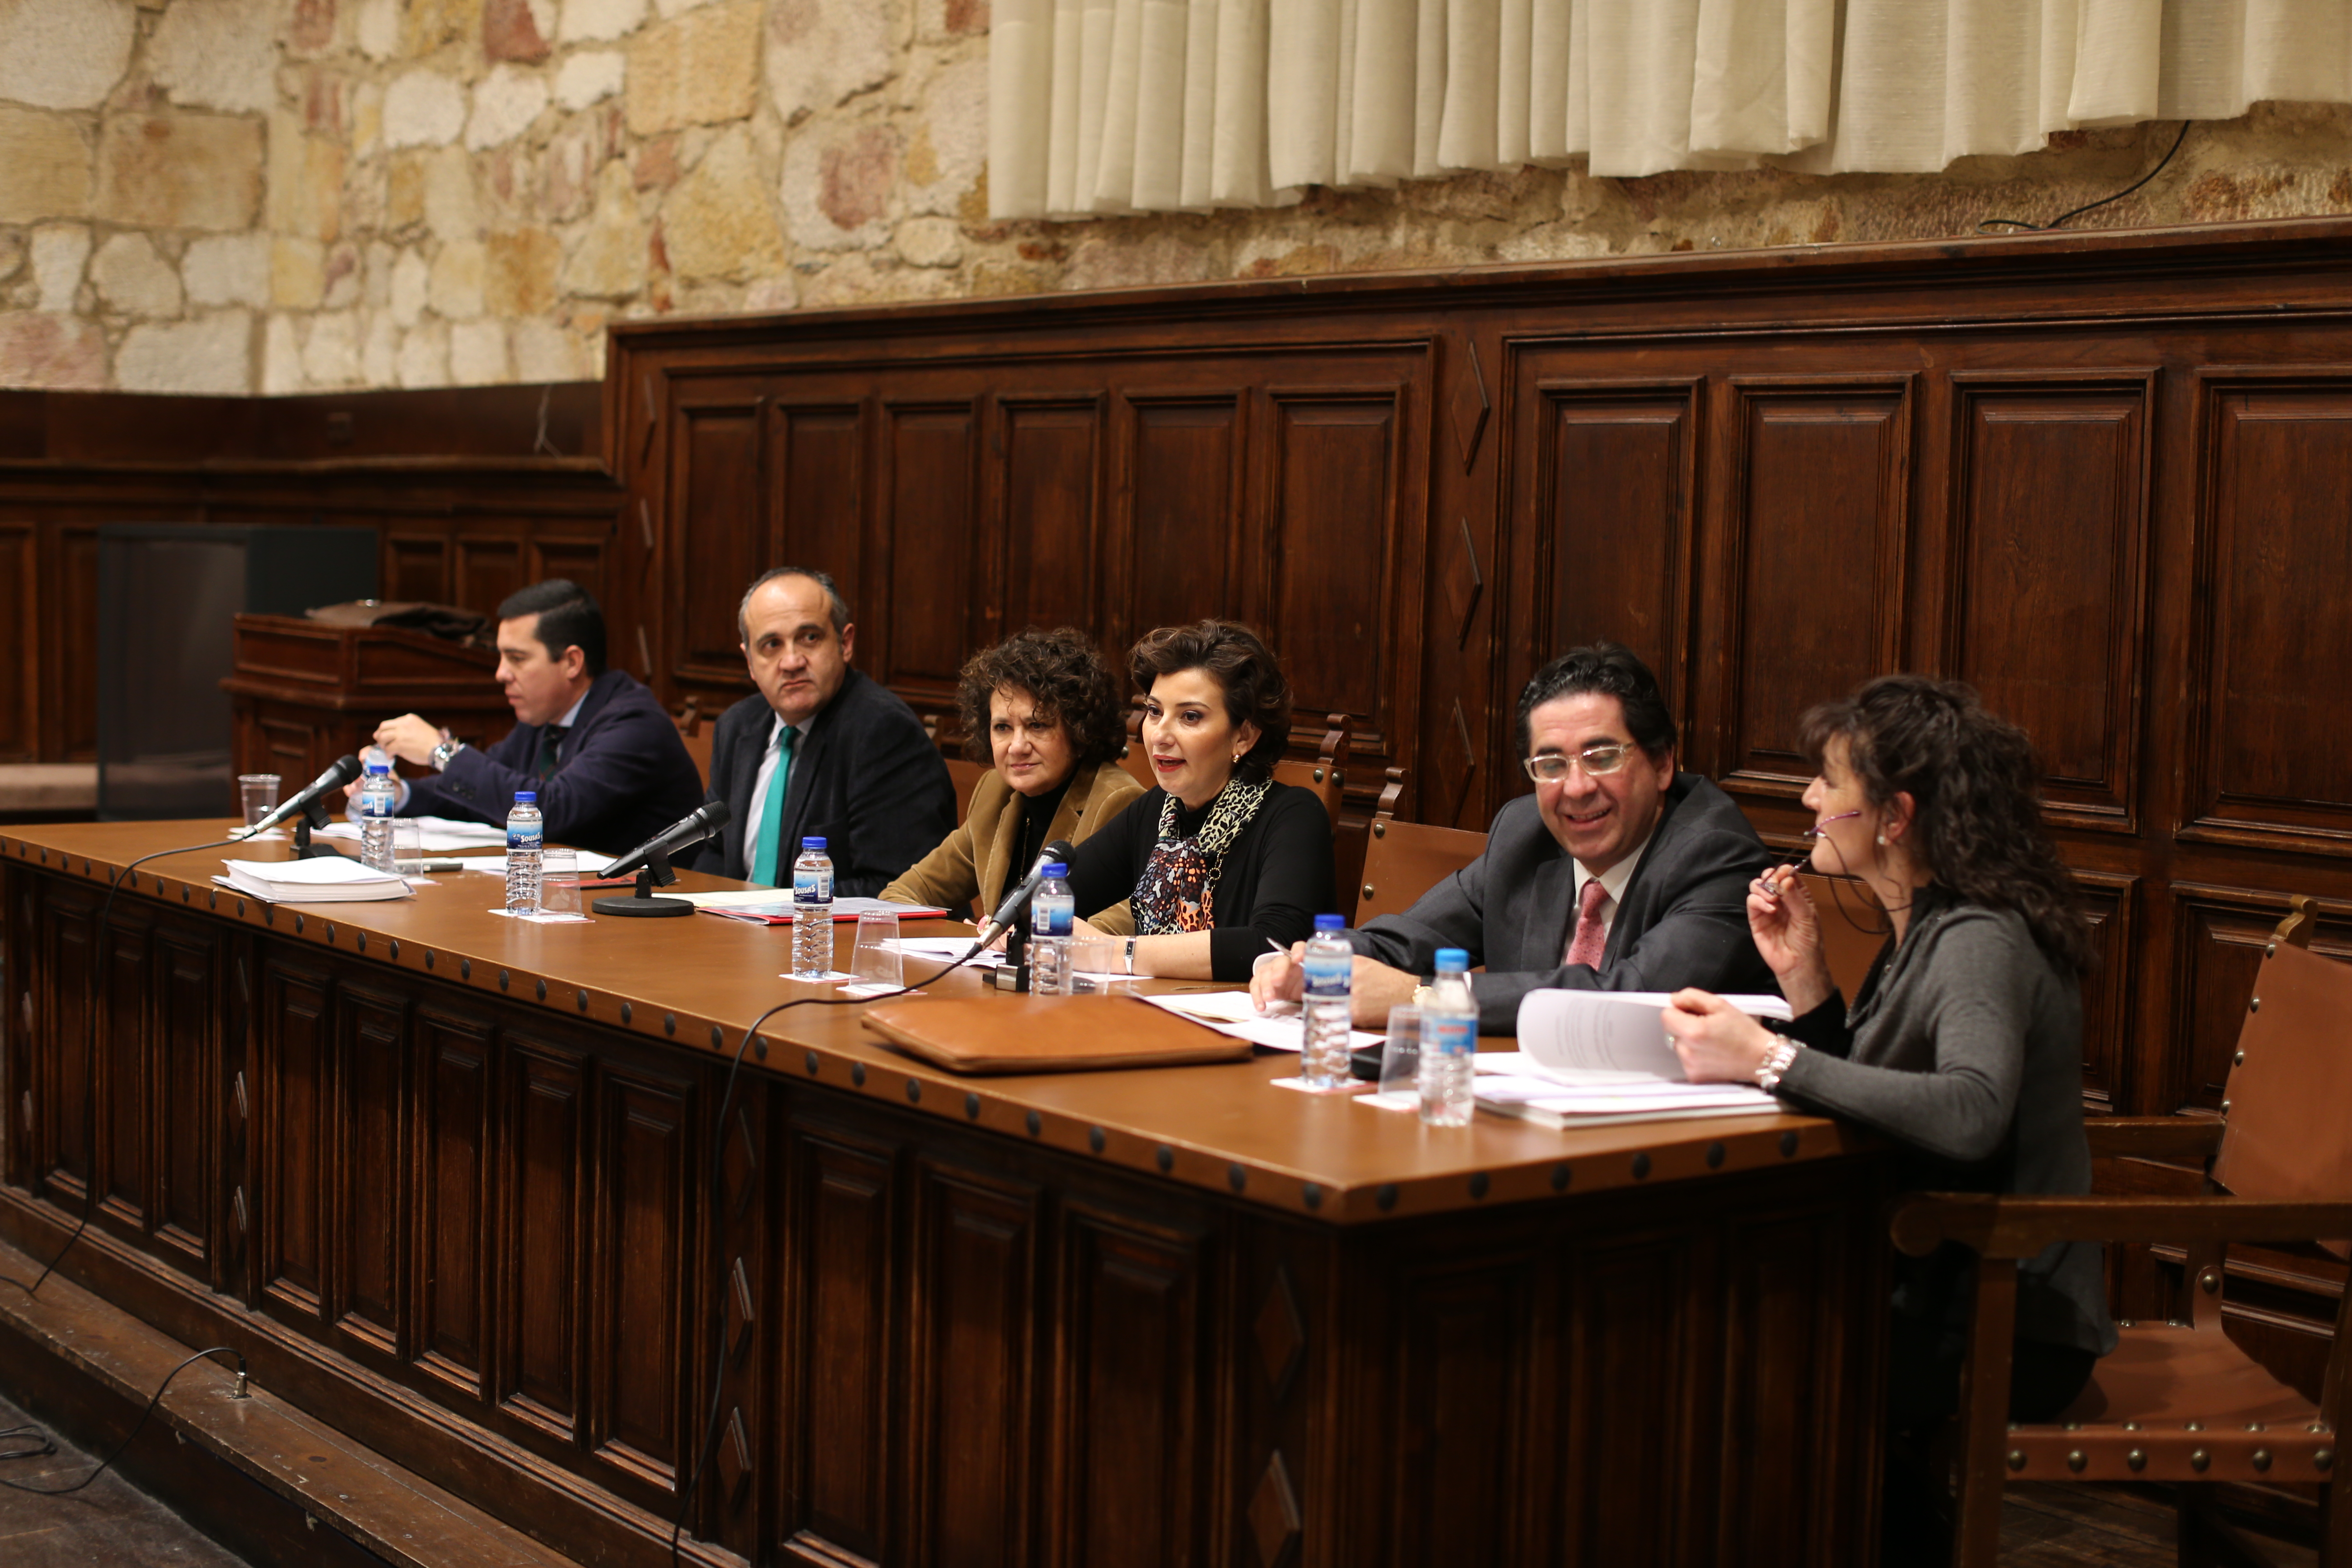 La Universidad de Salamanca suscribe una declaración de apoyo a los ministros de Justicia de Iberoamérica en la salvaguarda del patrimonio y de los bienes culturales y de su tráfico ilícito